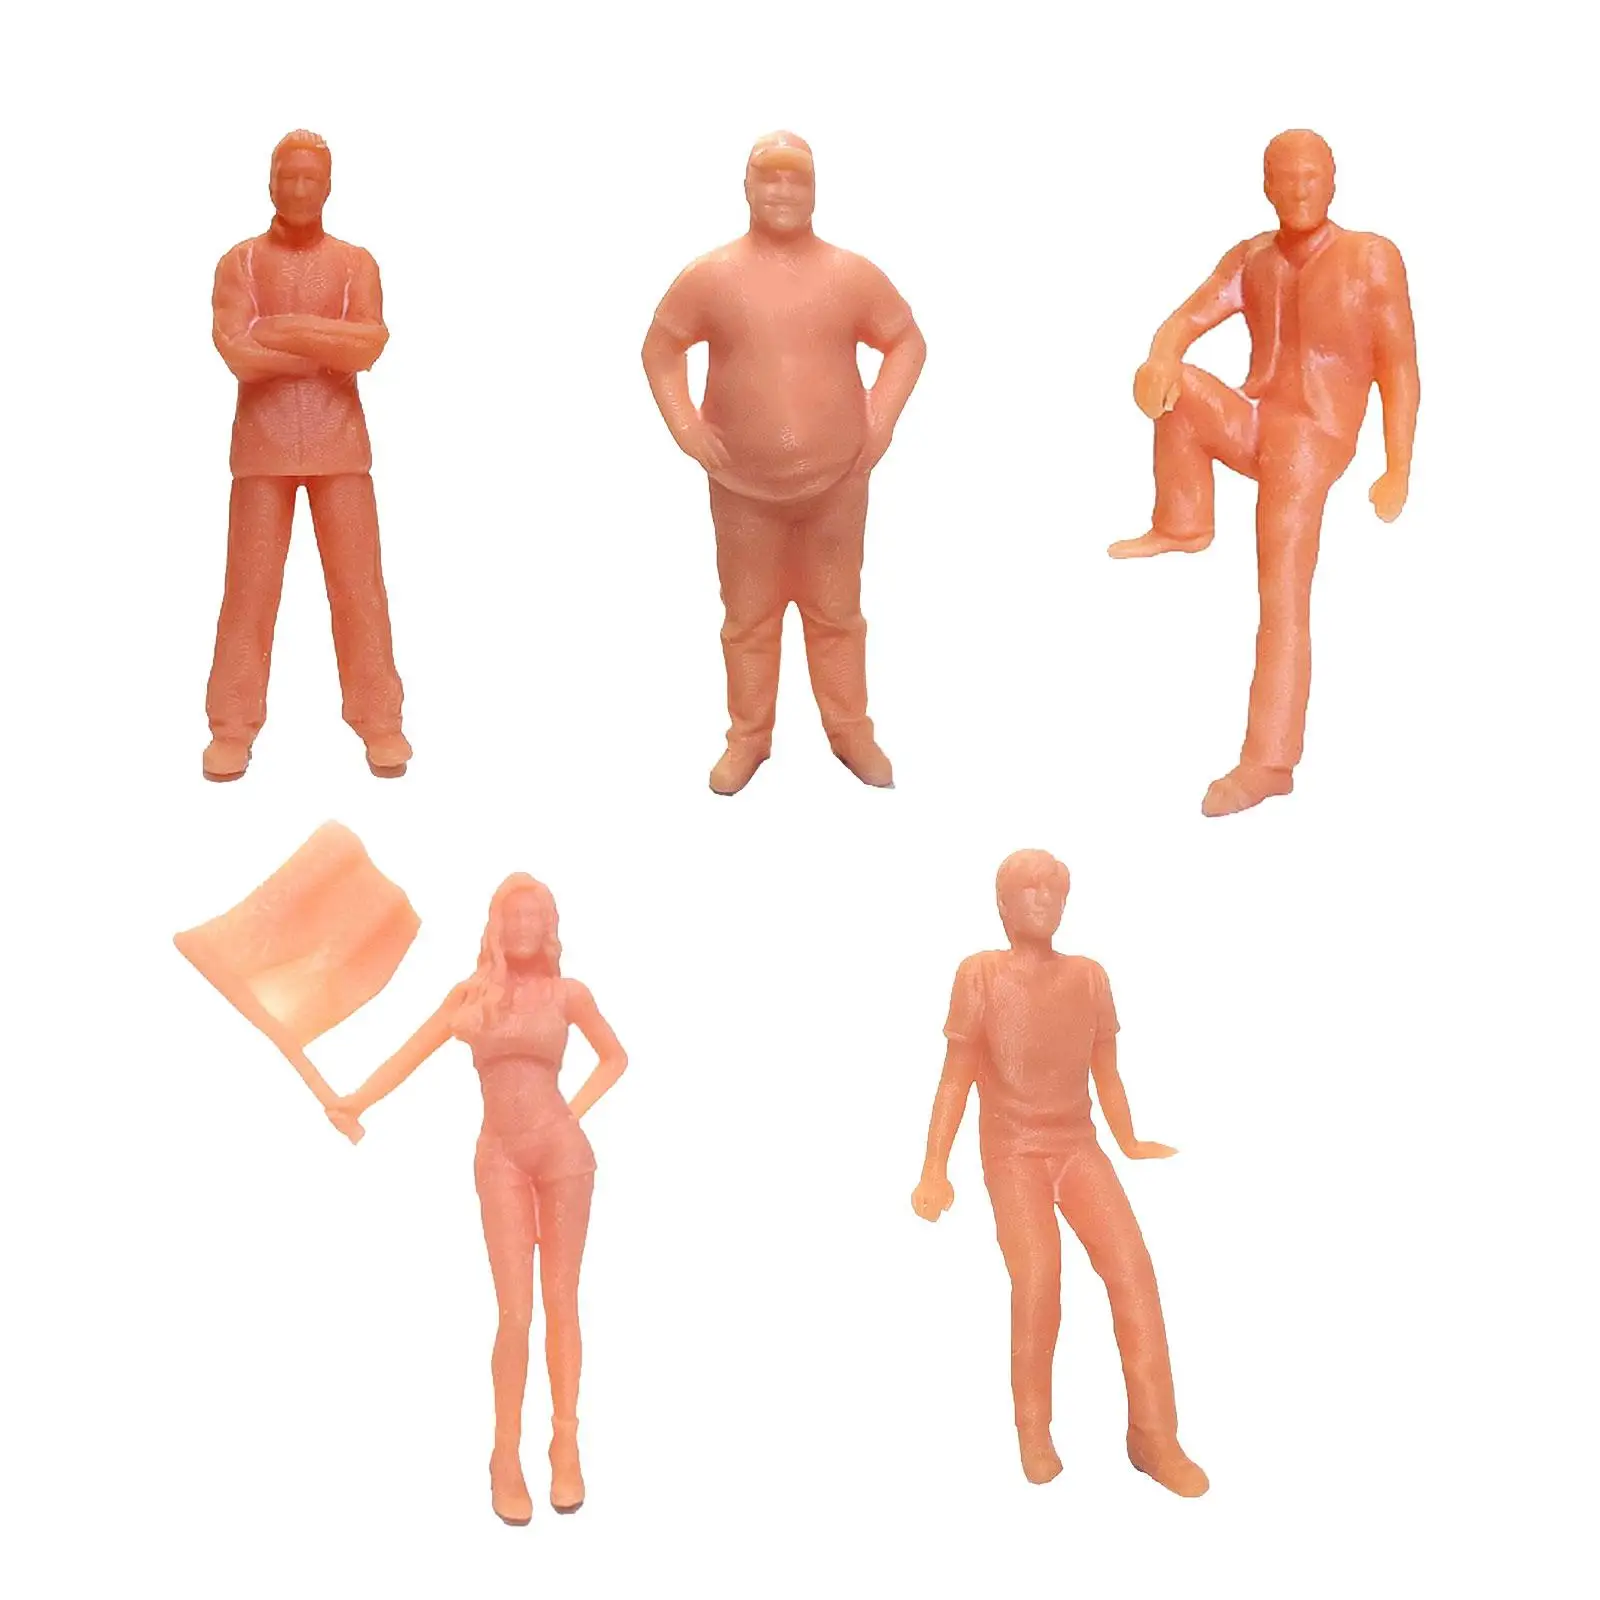 5x 1/64 Scale People Figure Simulation Miniature Model Figures Tiny People for Fairy Garden Diorama Miniature Scene Accessories